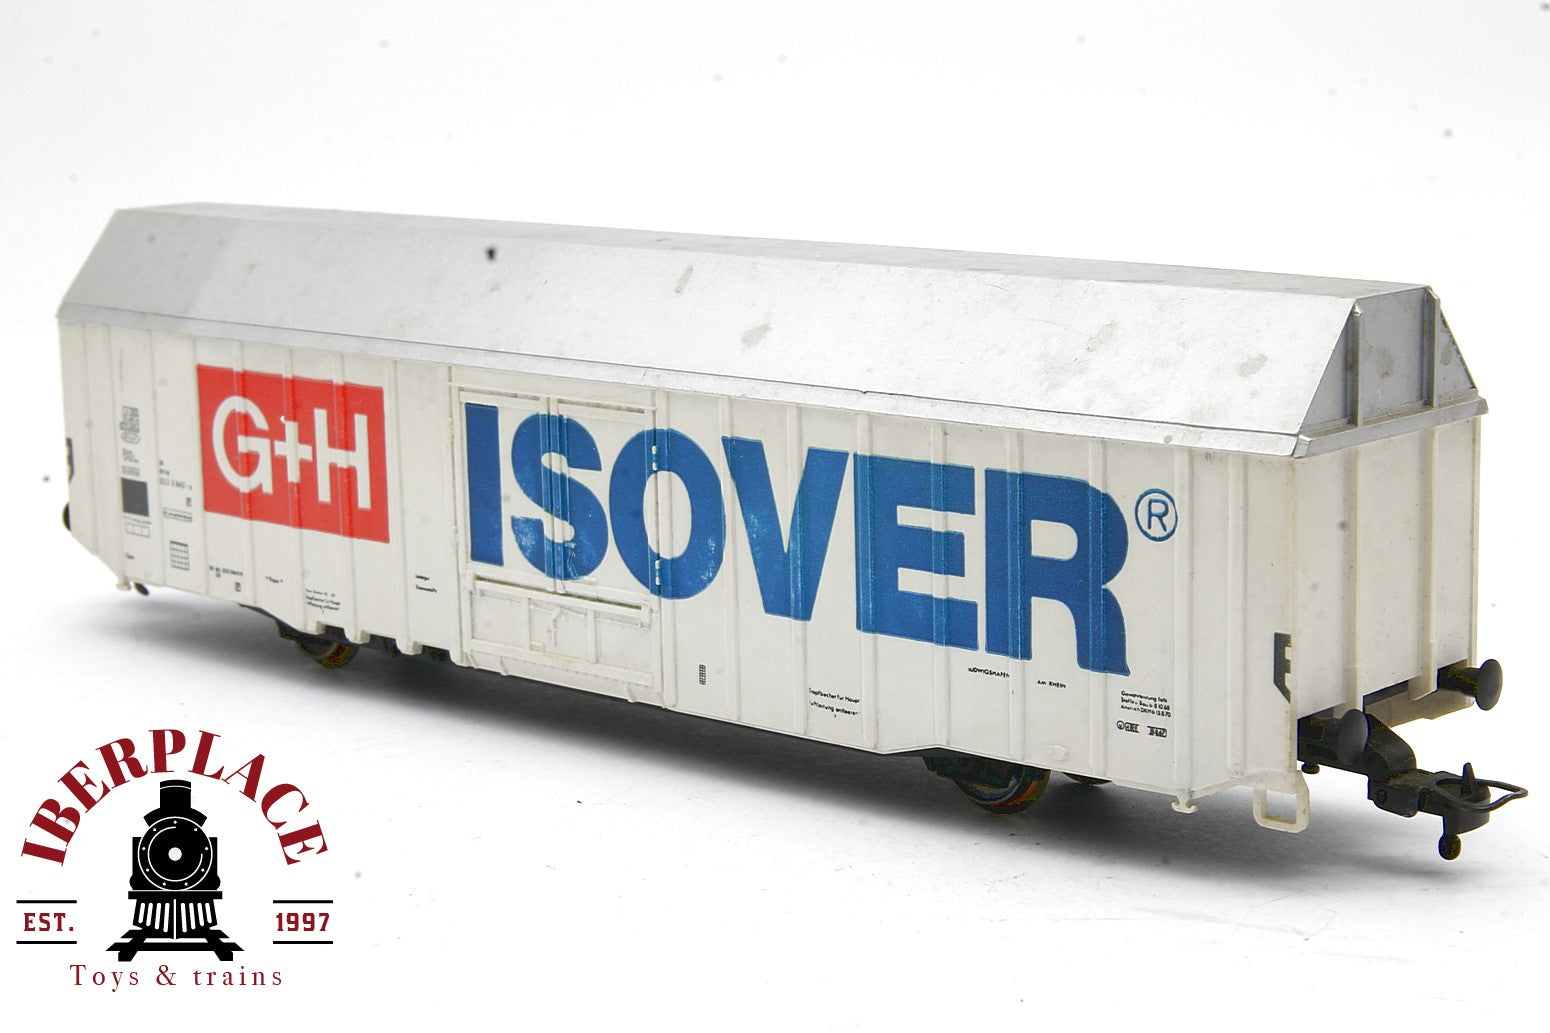 Fleischmann 5378 vagón mercancías ISOVER G+H DB 022 0 842-8 escala H0 1:87 ho 00